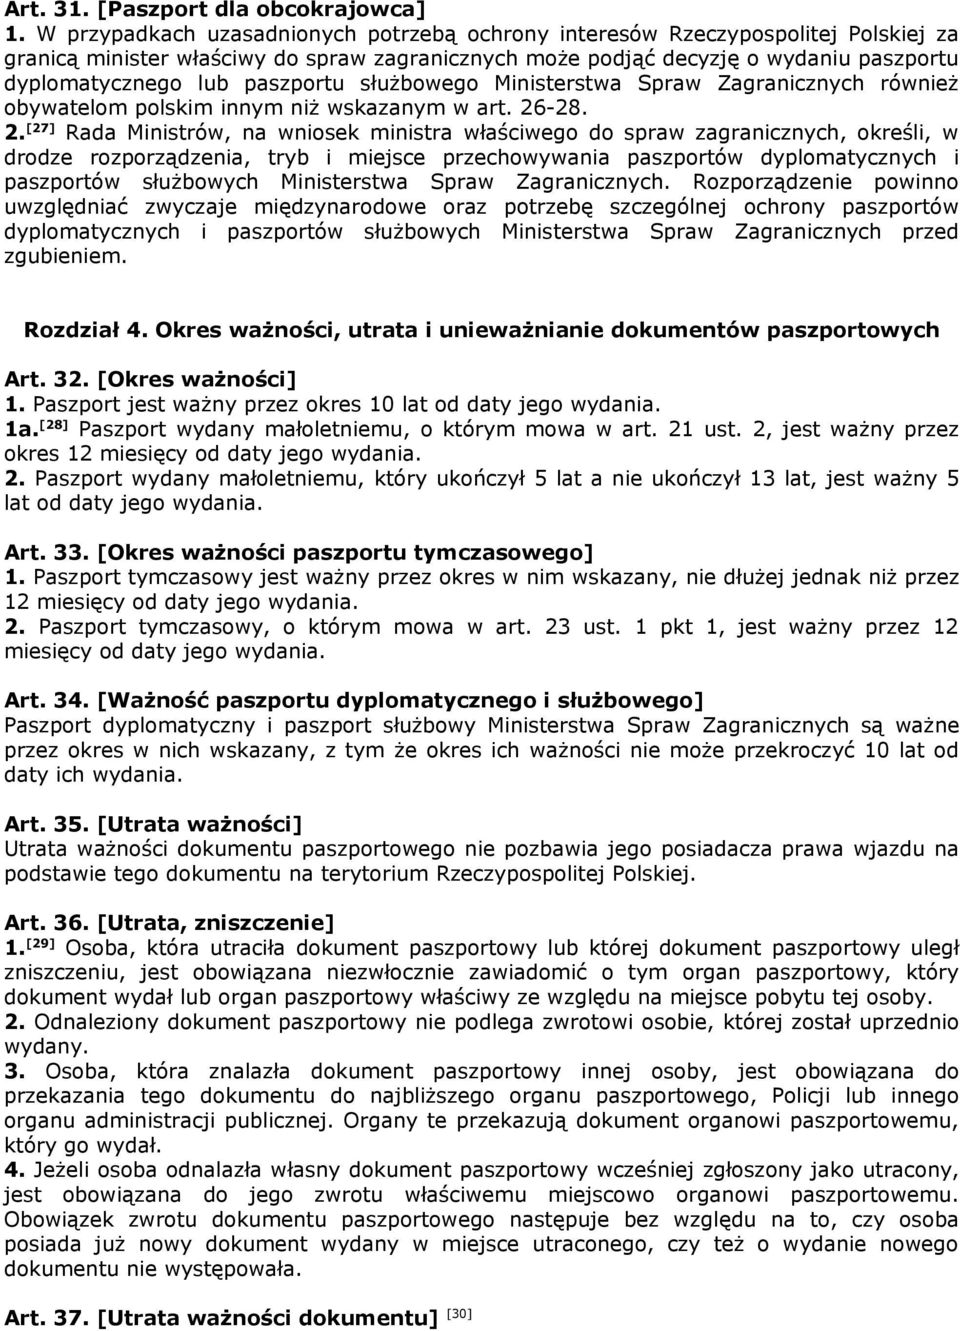 paszportu służbowego Ministerstwa Spraw Zagranicznych również obywatelom polskim innym niż wskazanym w art. 26